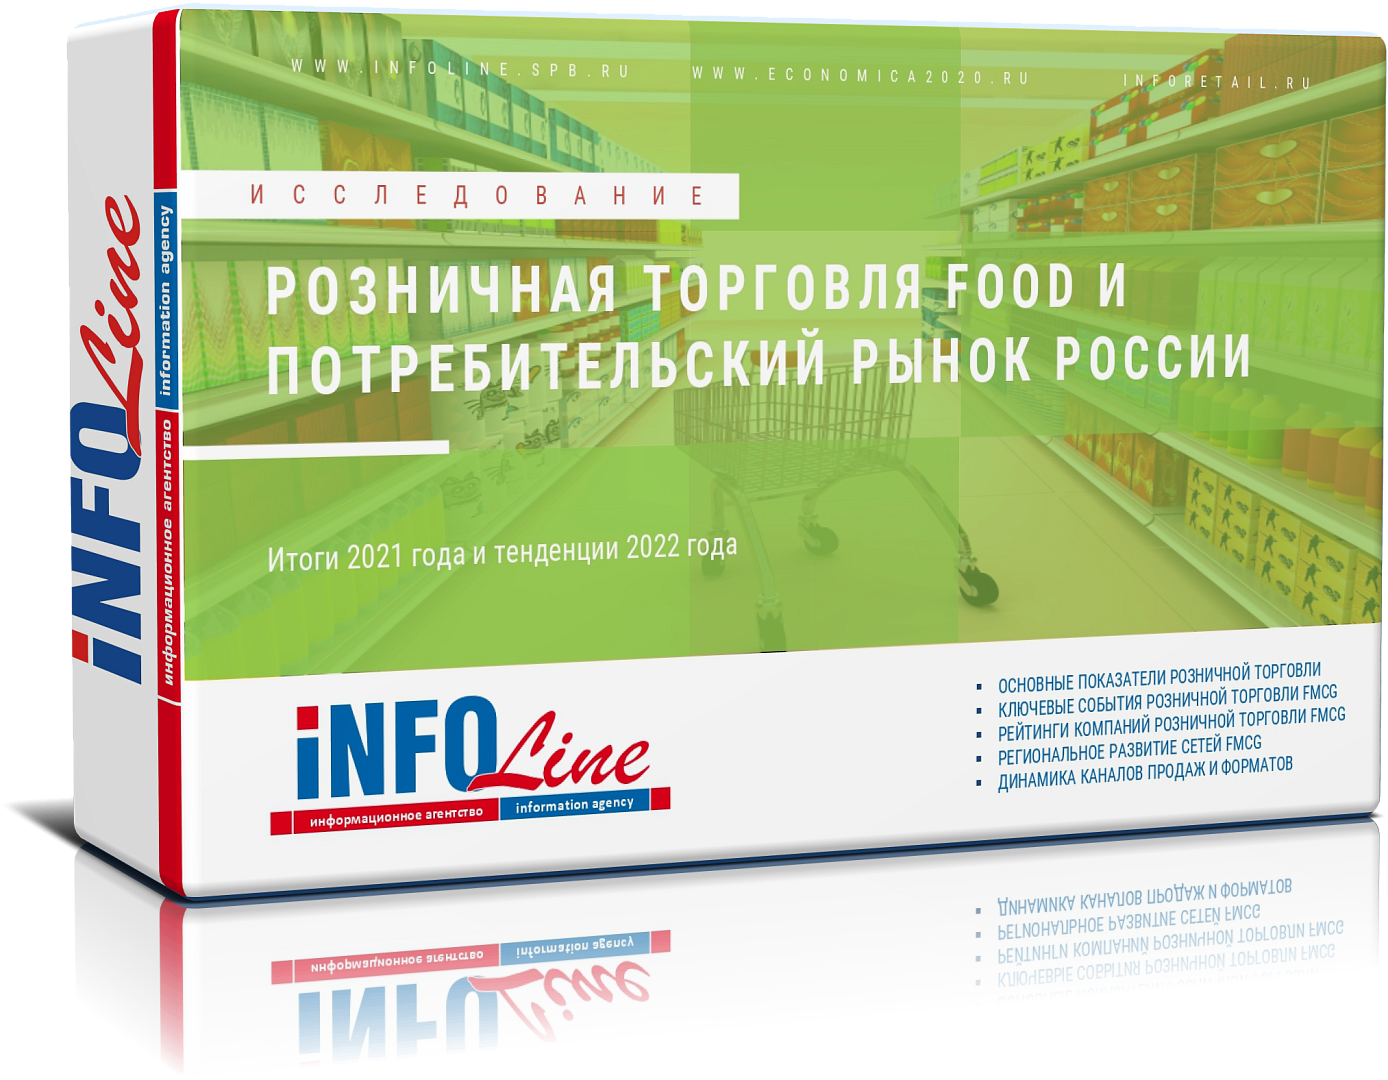 Исследование "Розничная торговля Food и потребительский рынок России 2022 года"